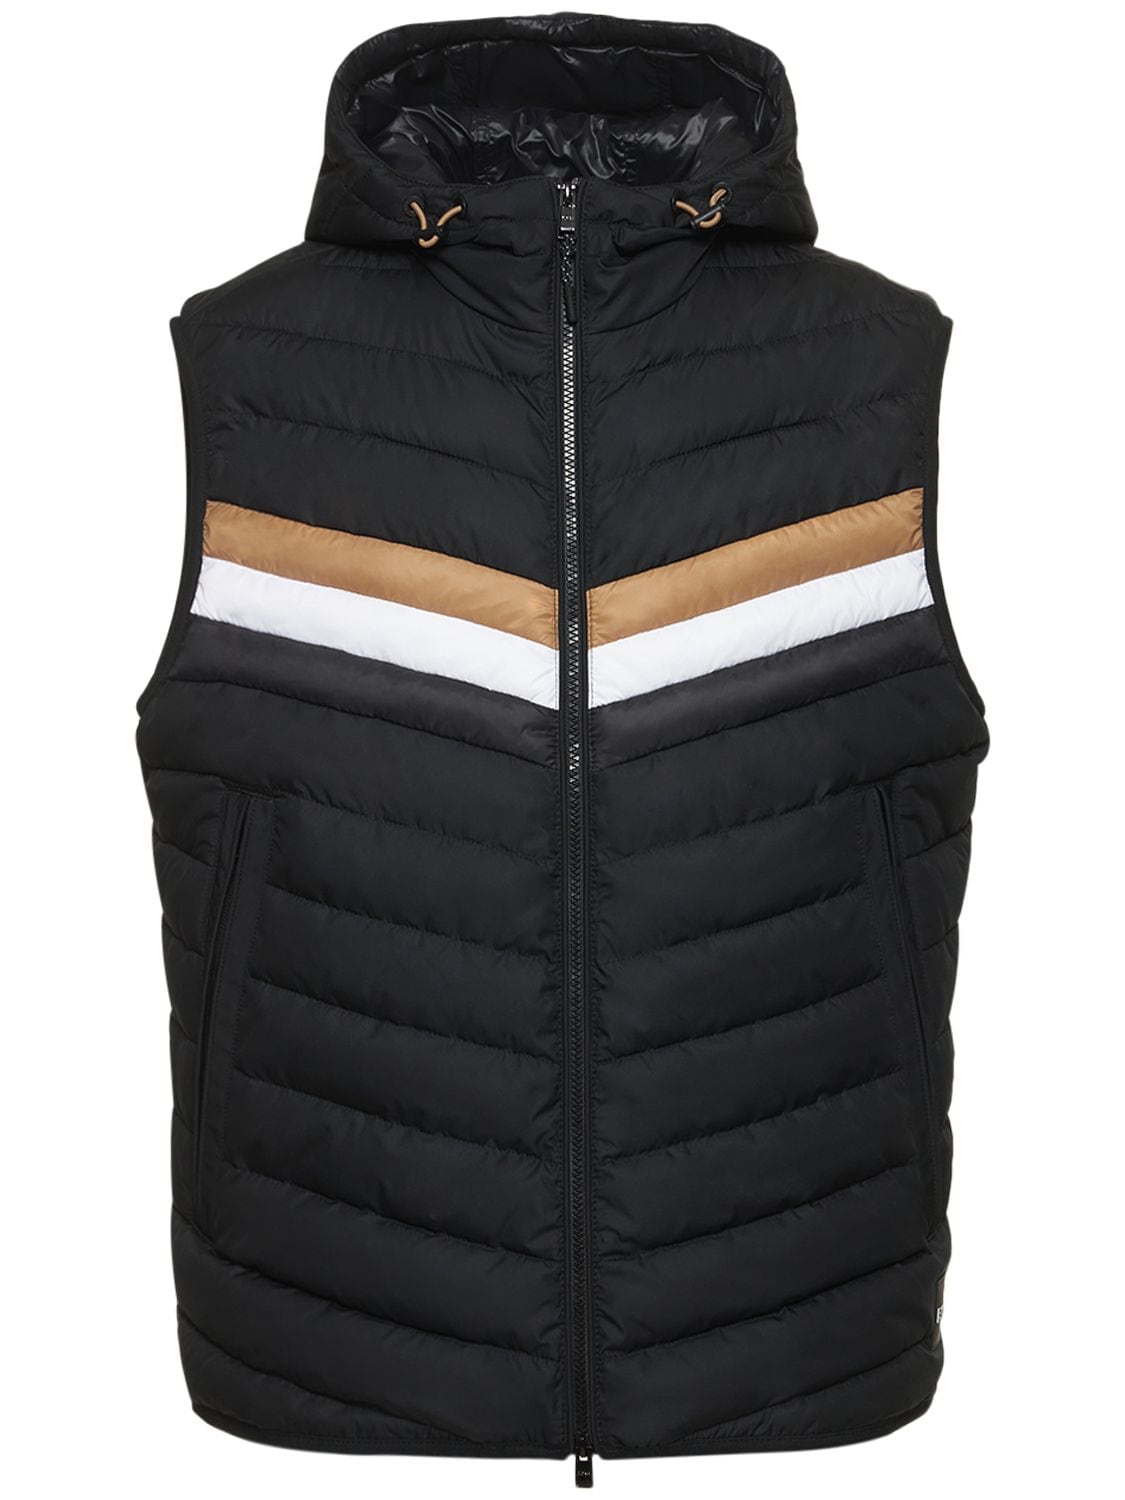 Hugo Boss Coviltra Puffer Vest In Black ModeSens